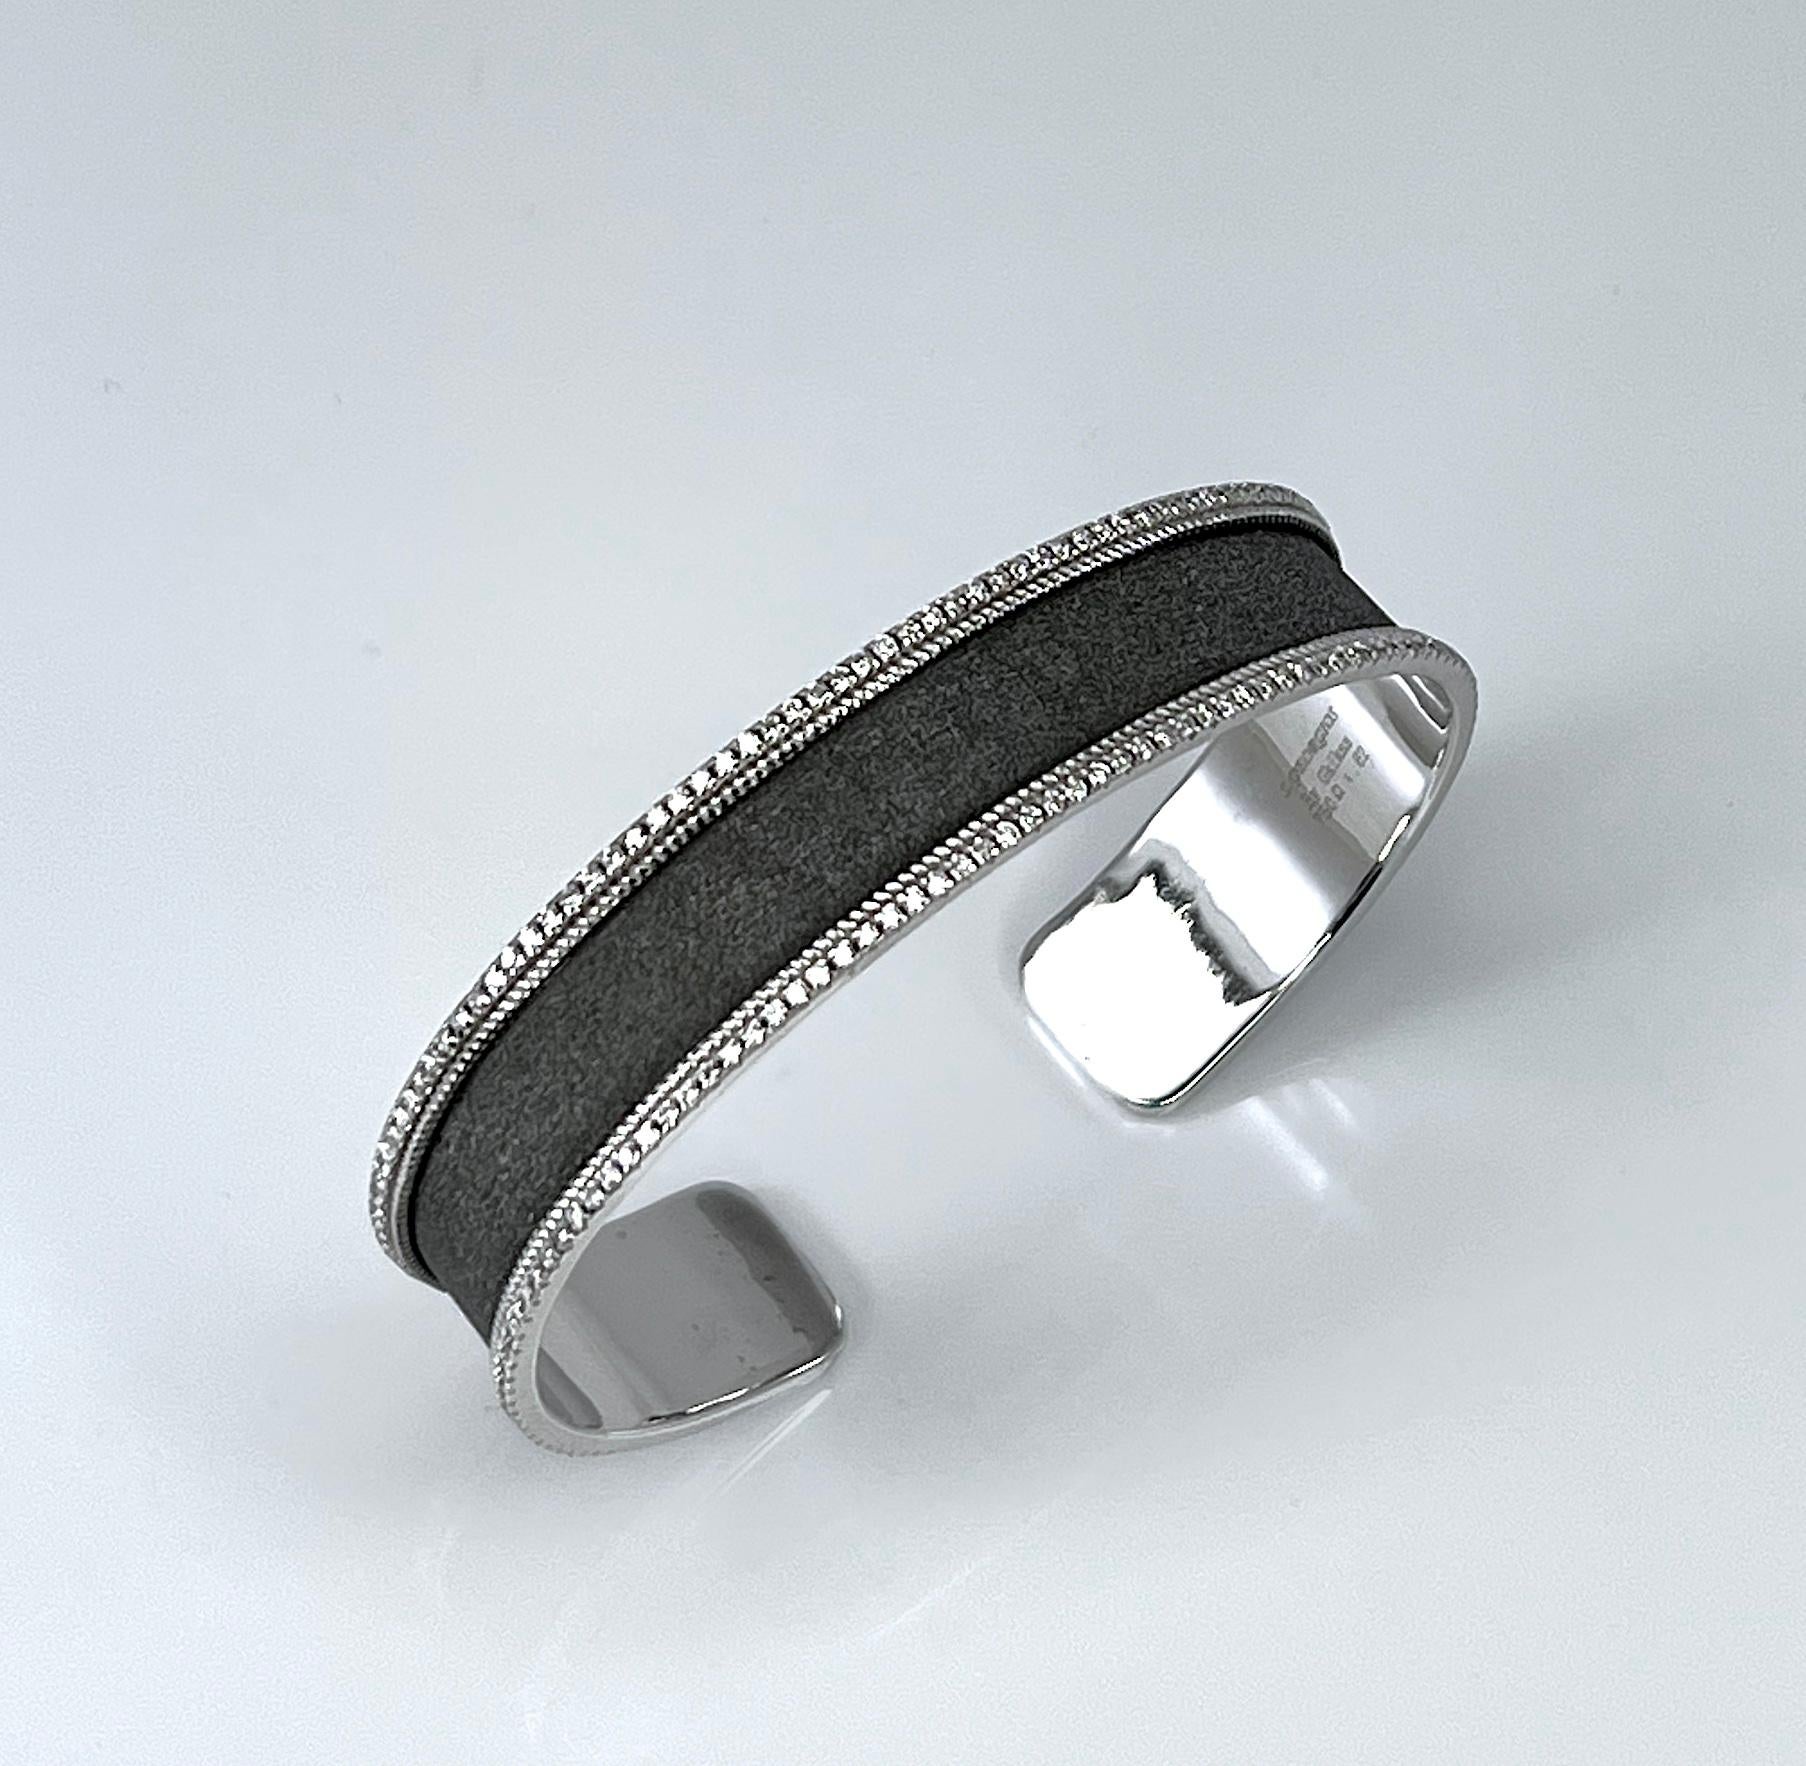 Le bracelet bangle de S.Georgios est fabriqué à la main en or blanc 18 carats. La finition est de style byzantin, avec une texture de velours unique sur le fond et une superposition de rhodium noir. Le bracelet présente deux lignes de diamants